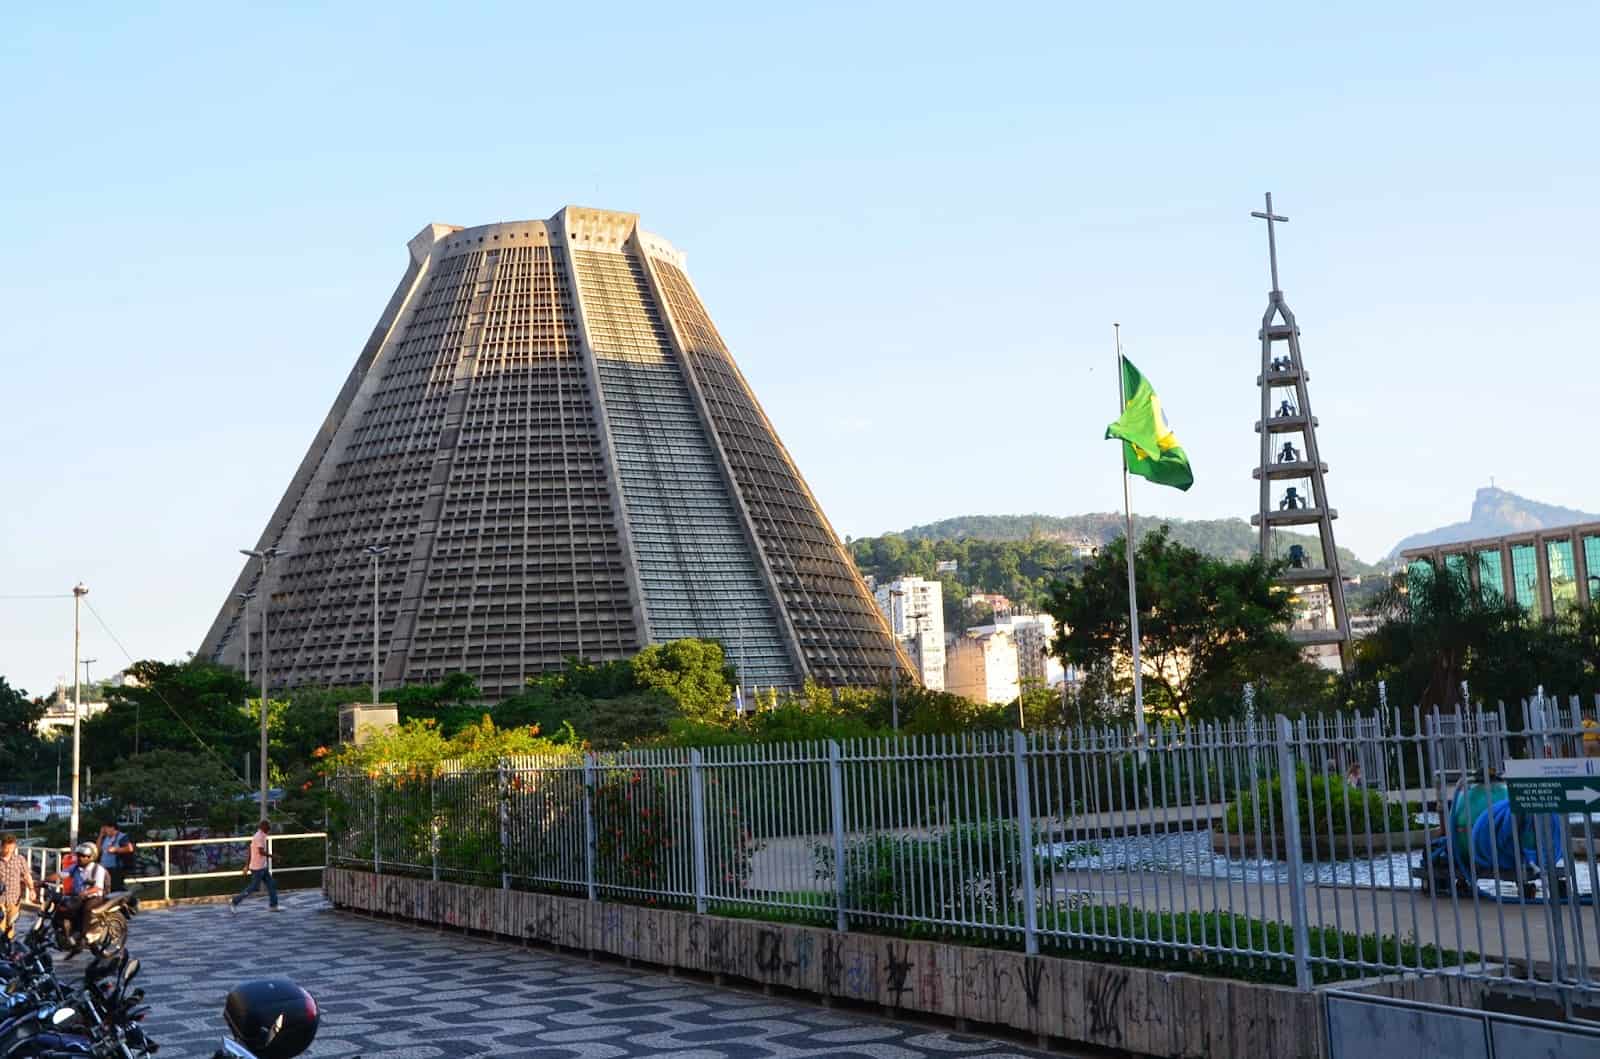 Catedral Metropolitana de São Sebastião in Rio de Janeiro, Brazil